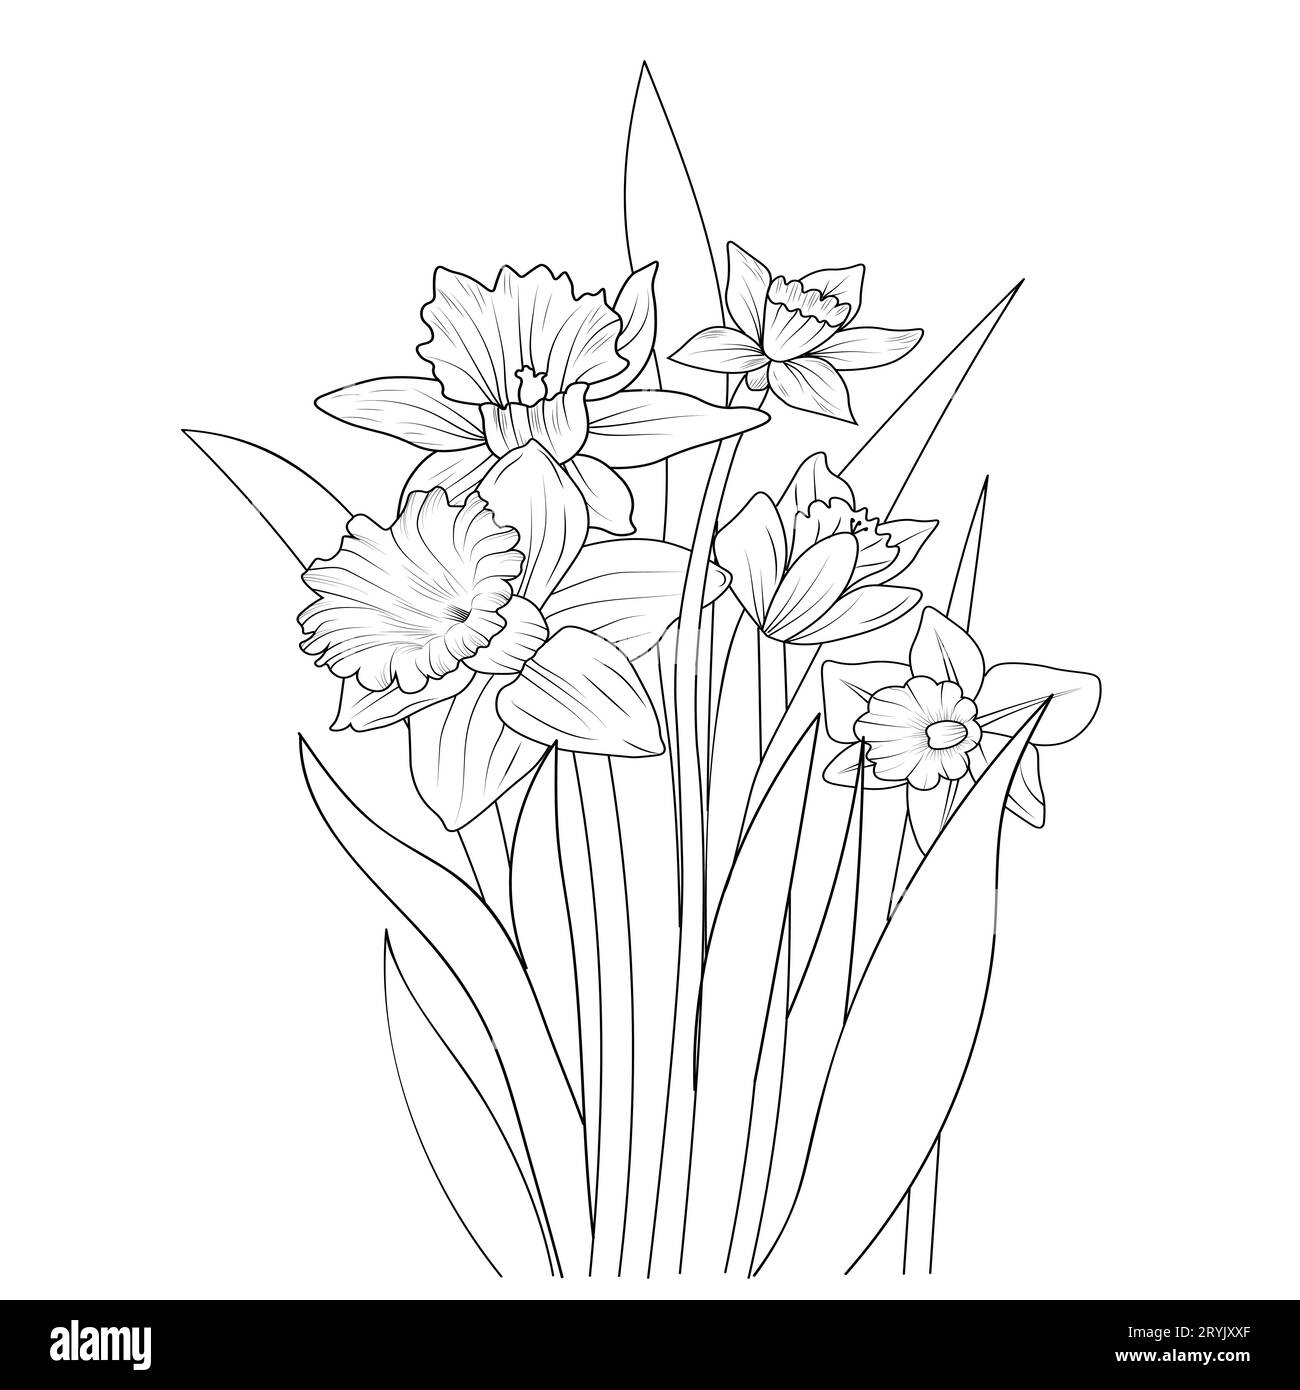 daffodil flower bouquet, daffodil flower line art, realistic daffodil ...